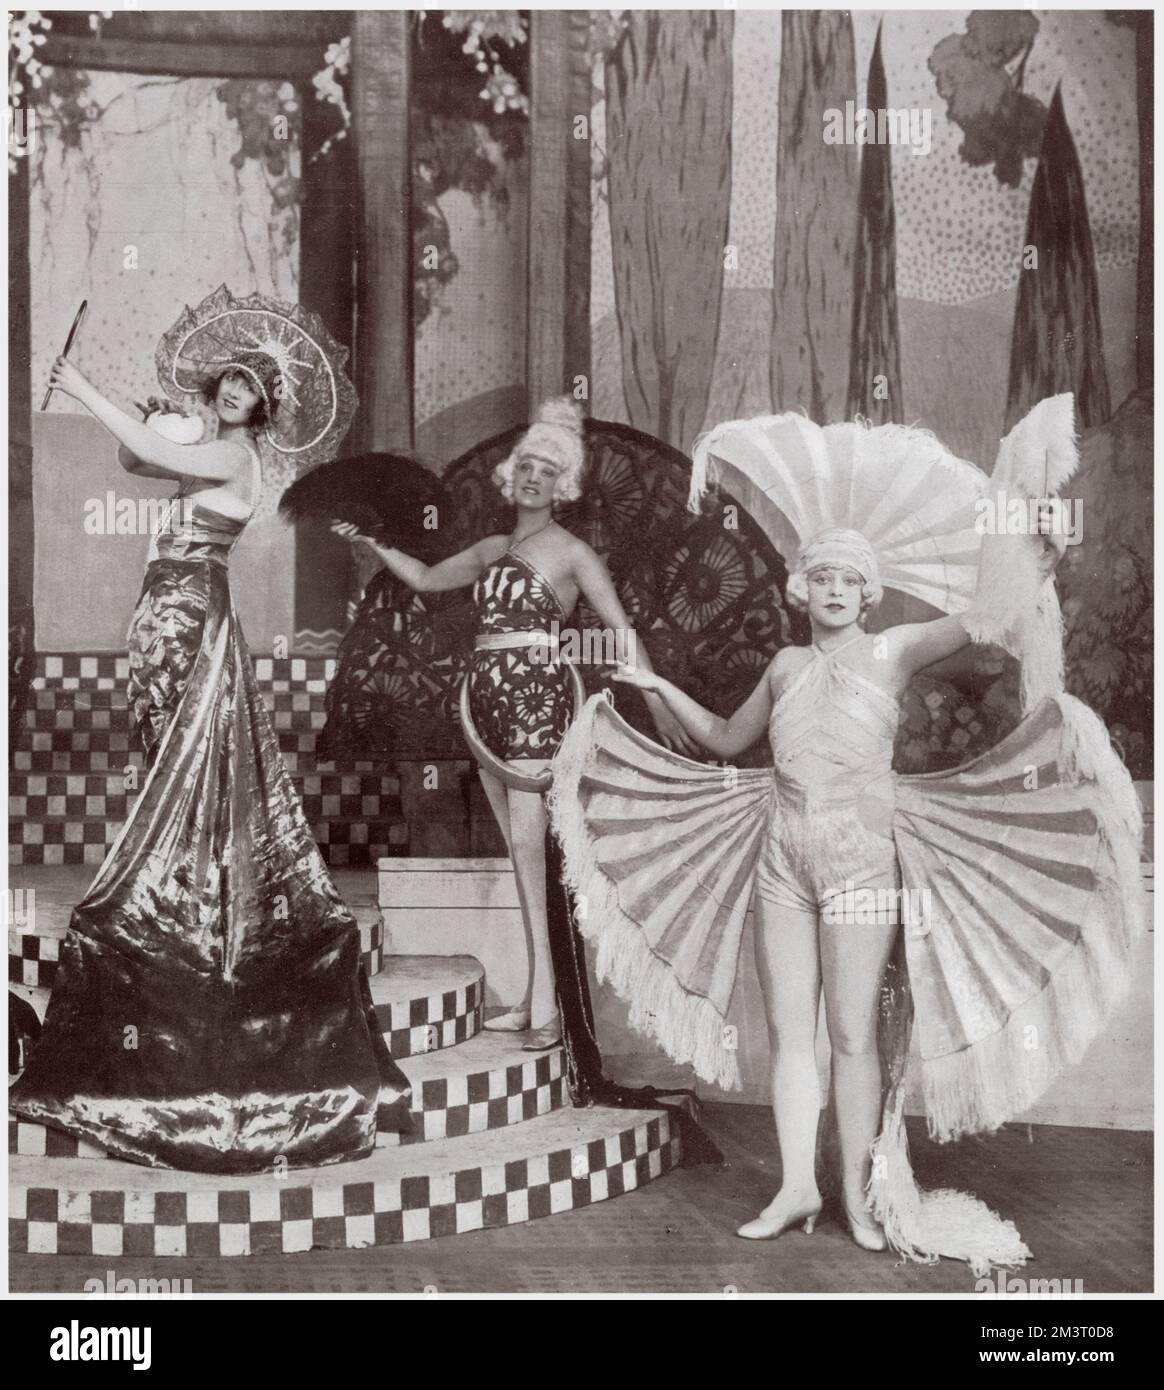 La première finale d'acte de Mother Goose à l'hippodrome de Londres, appelé "Un rêve de beauté" avec Dorothy Ward à gauche dans la partie principale du garçon de Robbie, l'amant de Jill, la fille de mère Goose. Curieusement, elle ne semble pas très boyâtre dans sa photographie mais elle tient néanmoins un œuf. Date: 1925 Banque D'Images